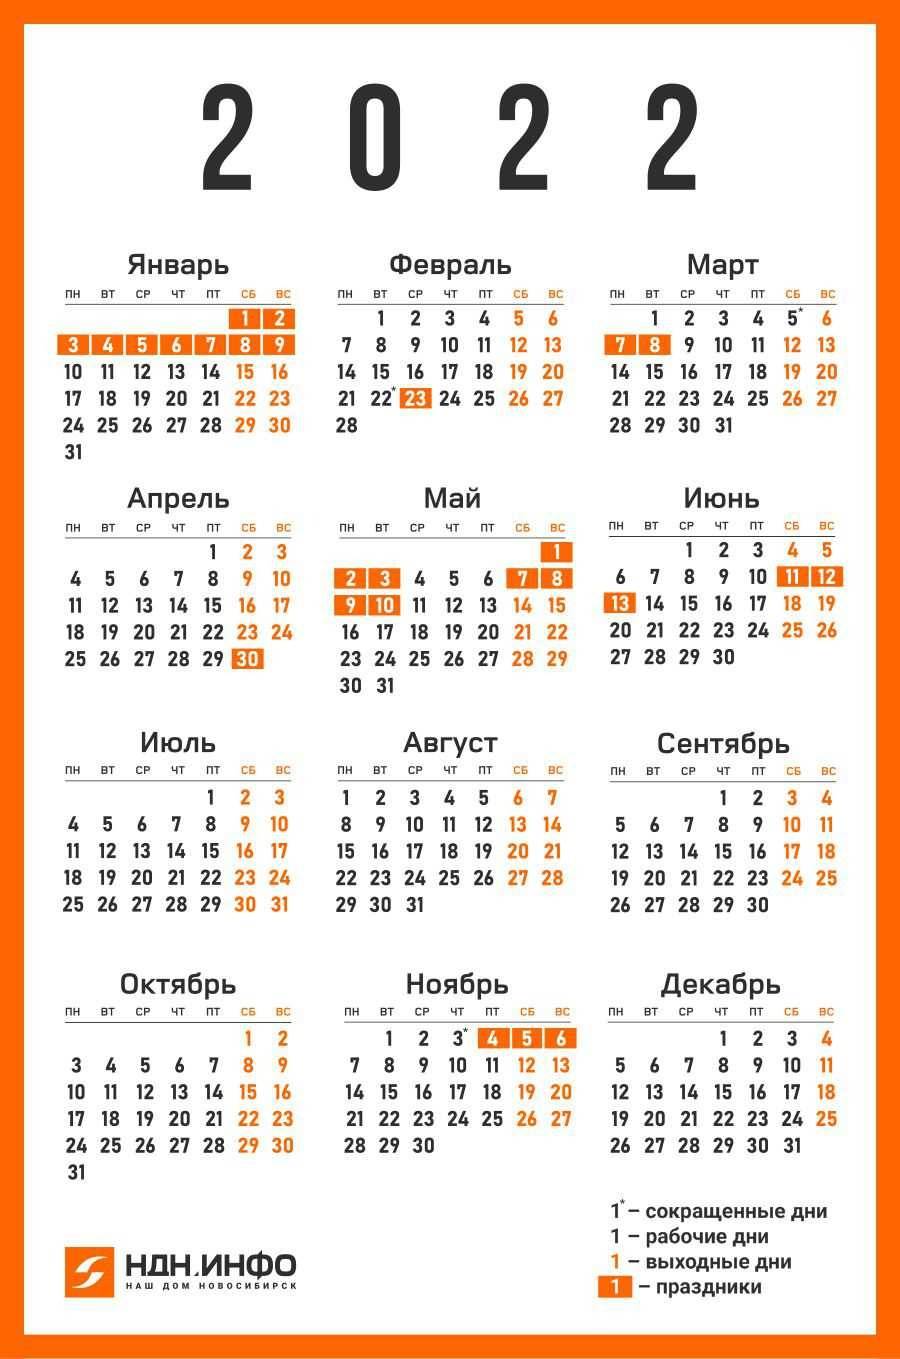 Производственный календарь на 2022 год для 5-дневной рабочей недели